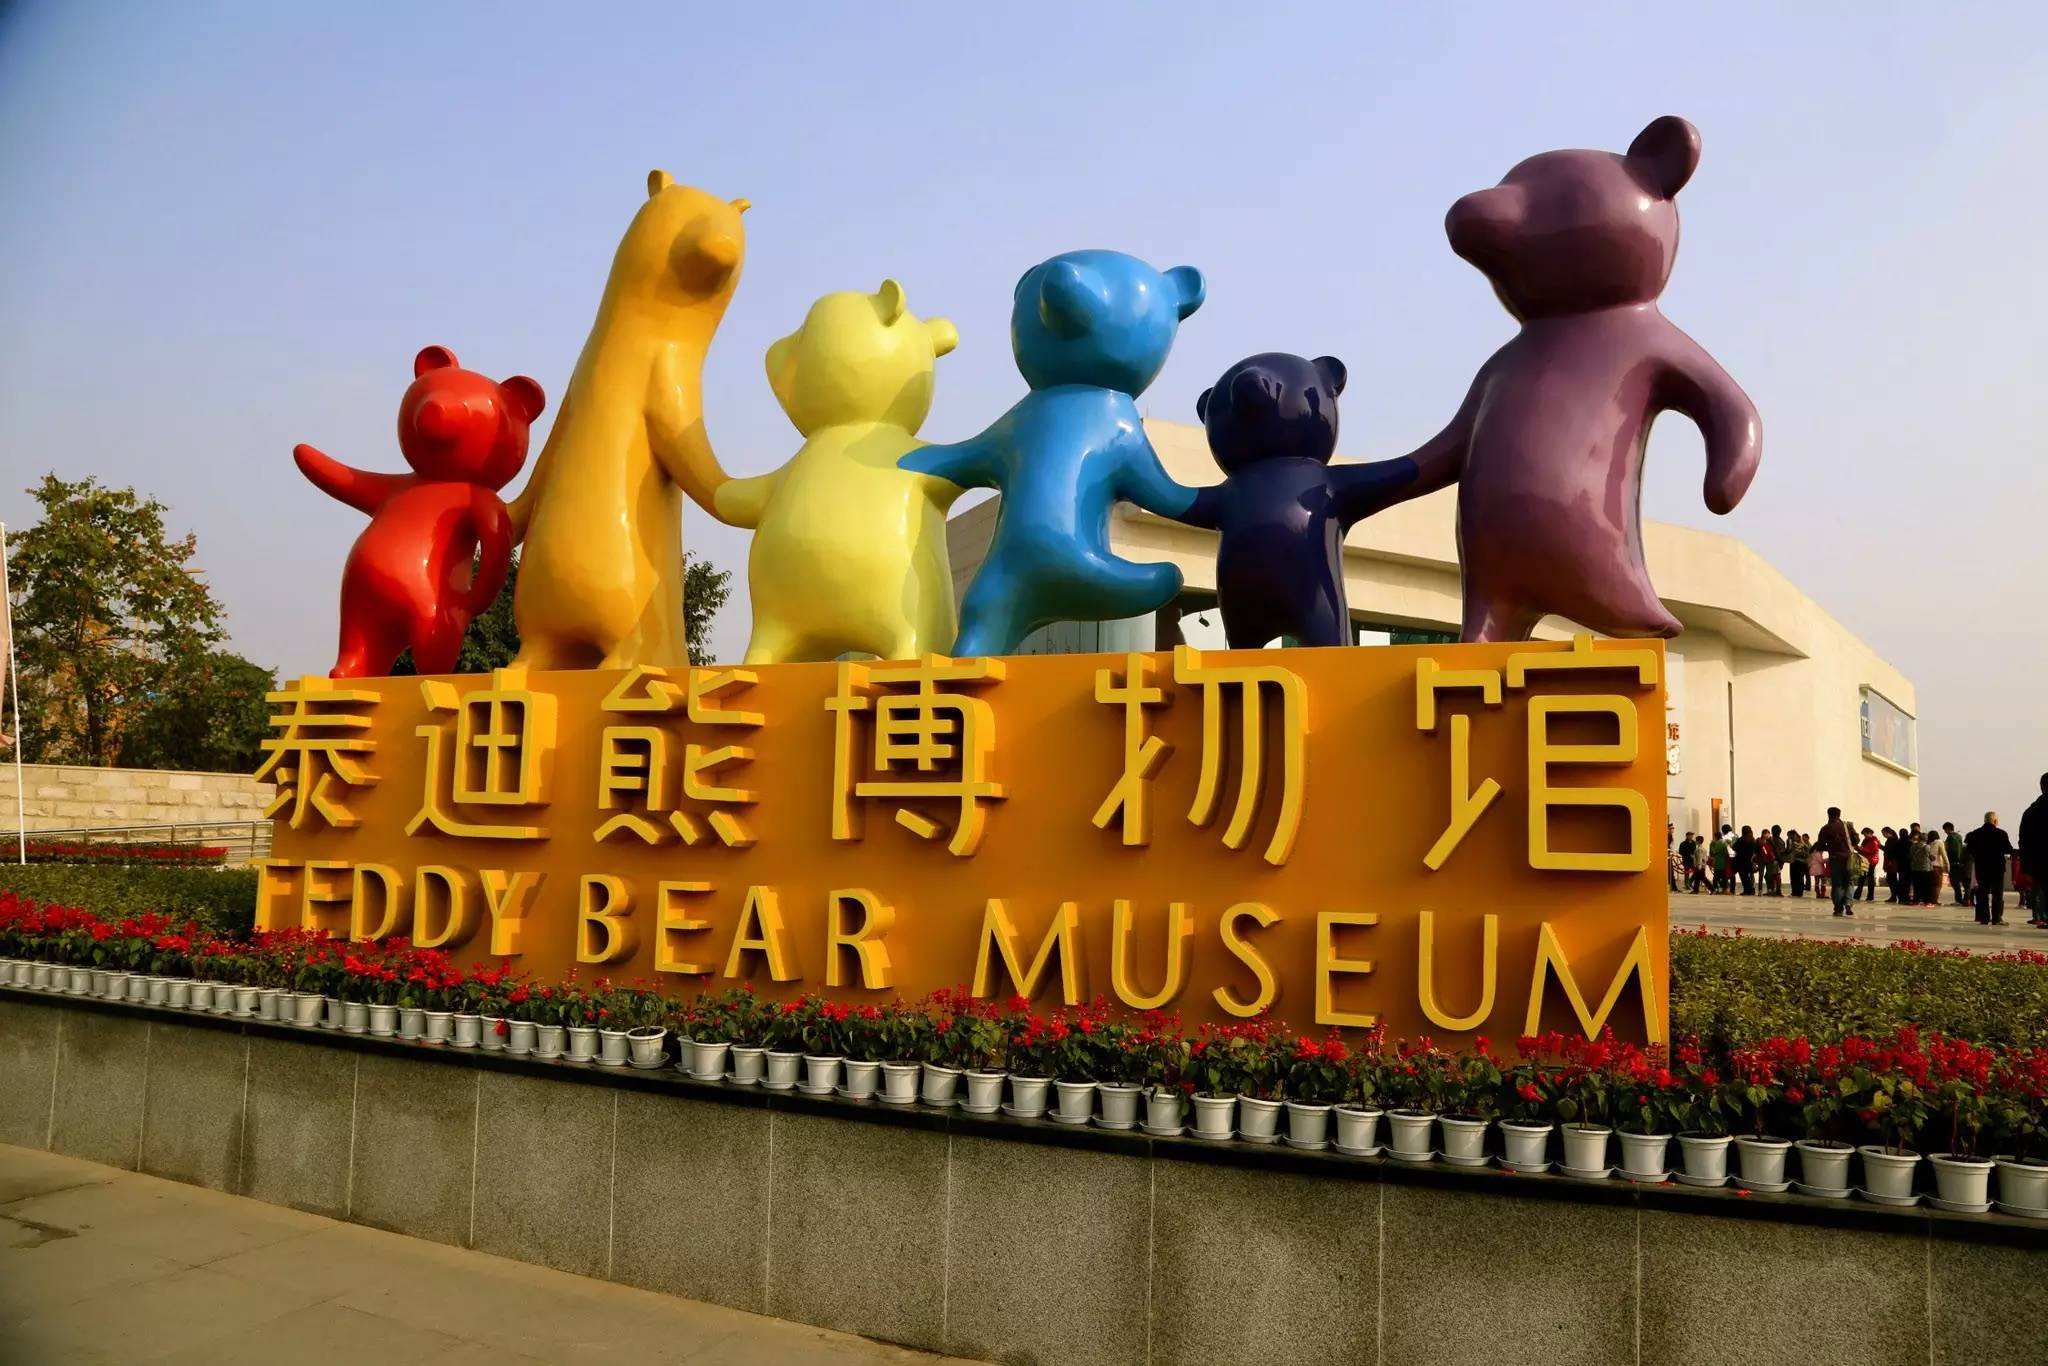 以泰迪熊为主题,游玩项目多位置:成都温江区国际体育城内泰迪熊博物馆